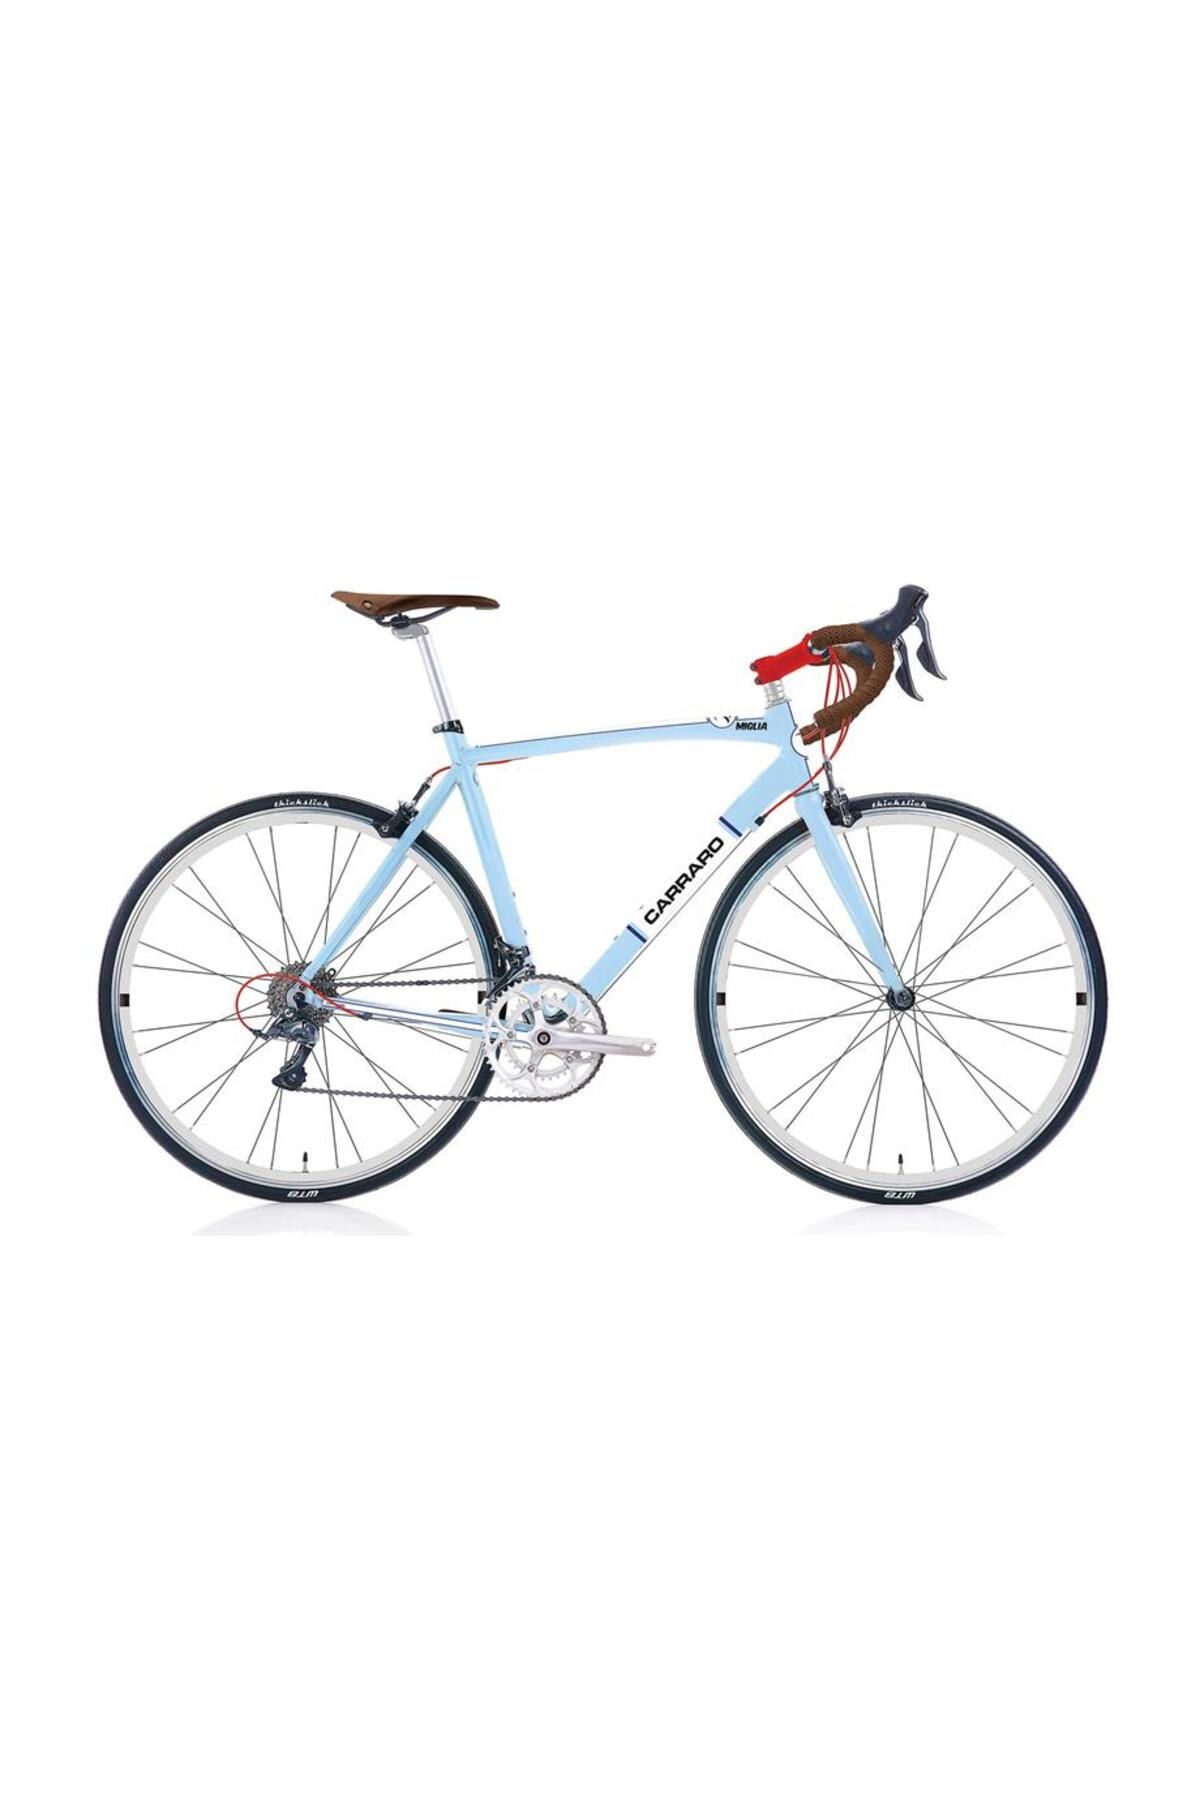 Carraro Mıglıa Erkek Yarış Bisikleti 560h V 28 Jant 16 Vites Açık Mavi Beyaz Kırmızı Koyu Mavi